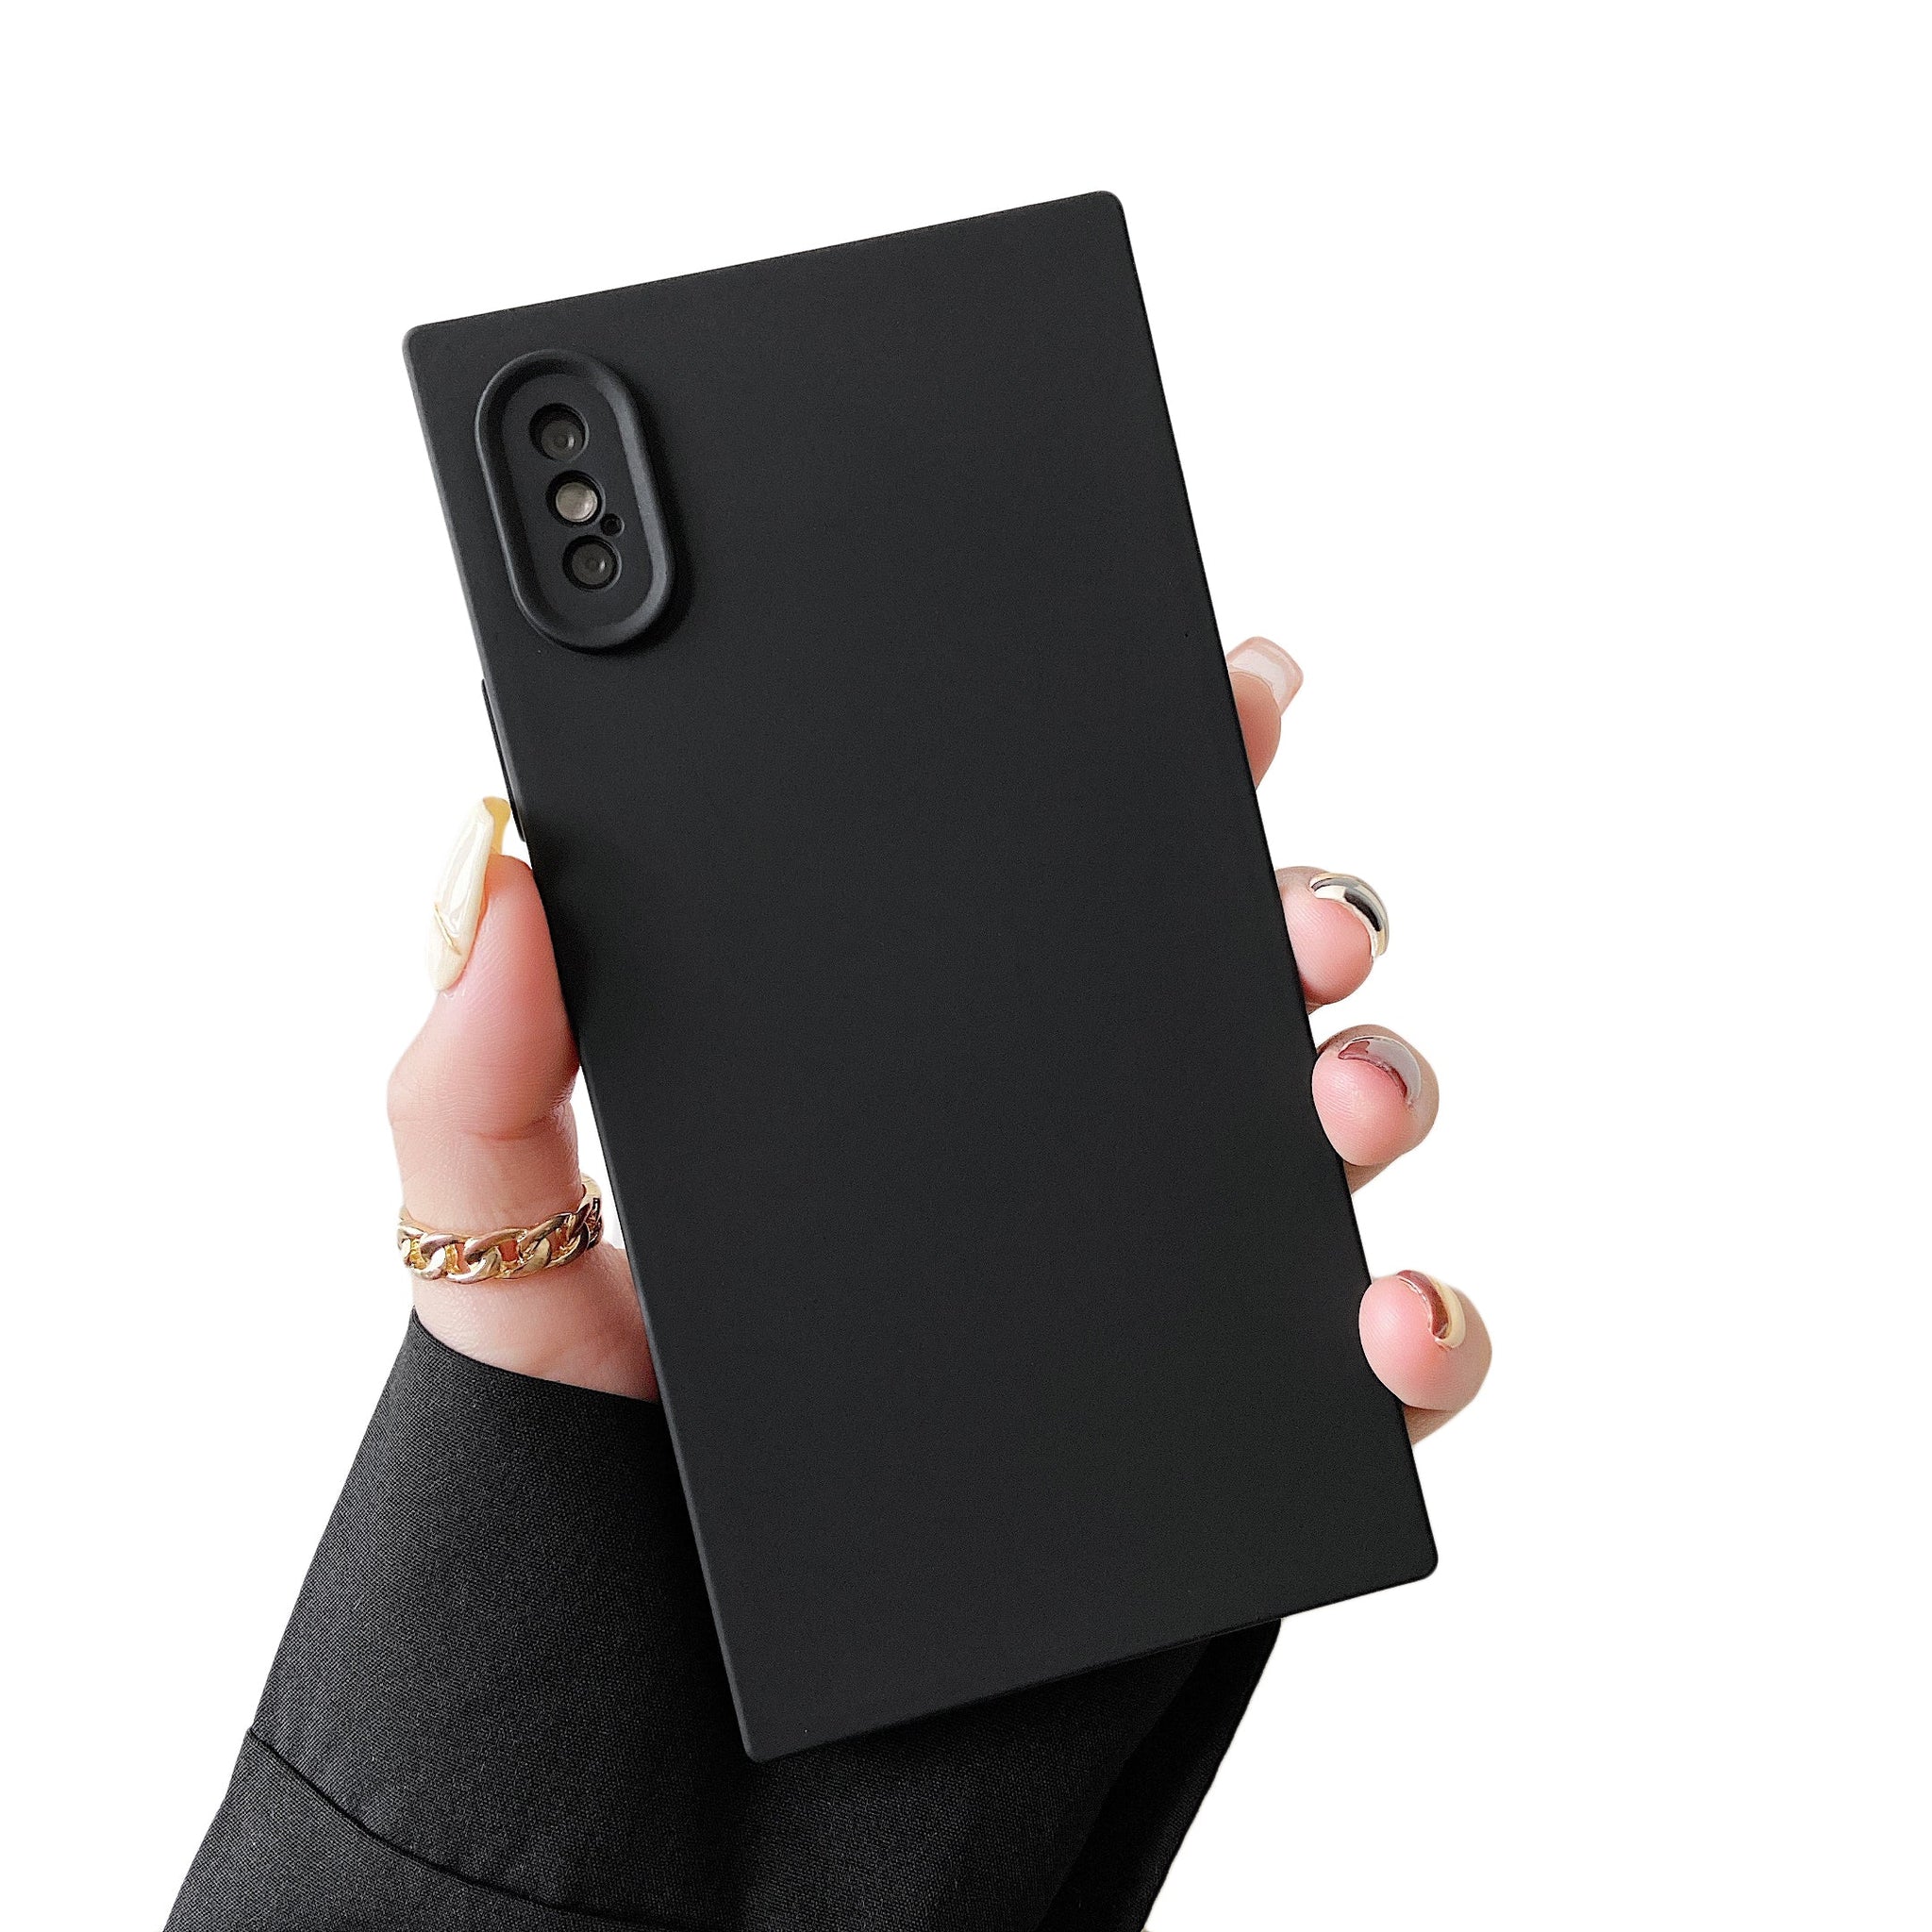 iPhone XS Max Case Square Silicone Camera Protector (Black)